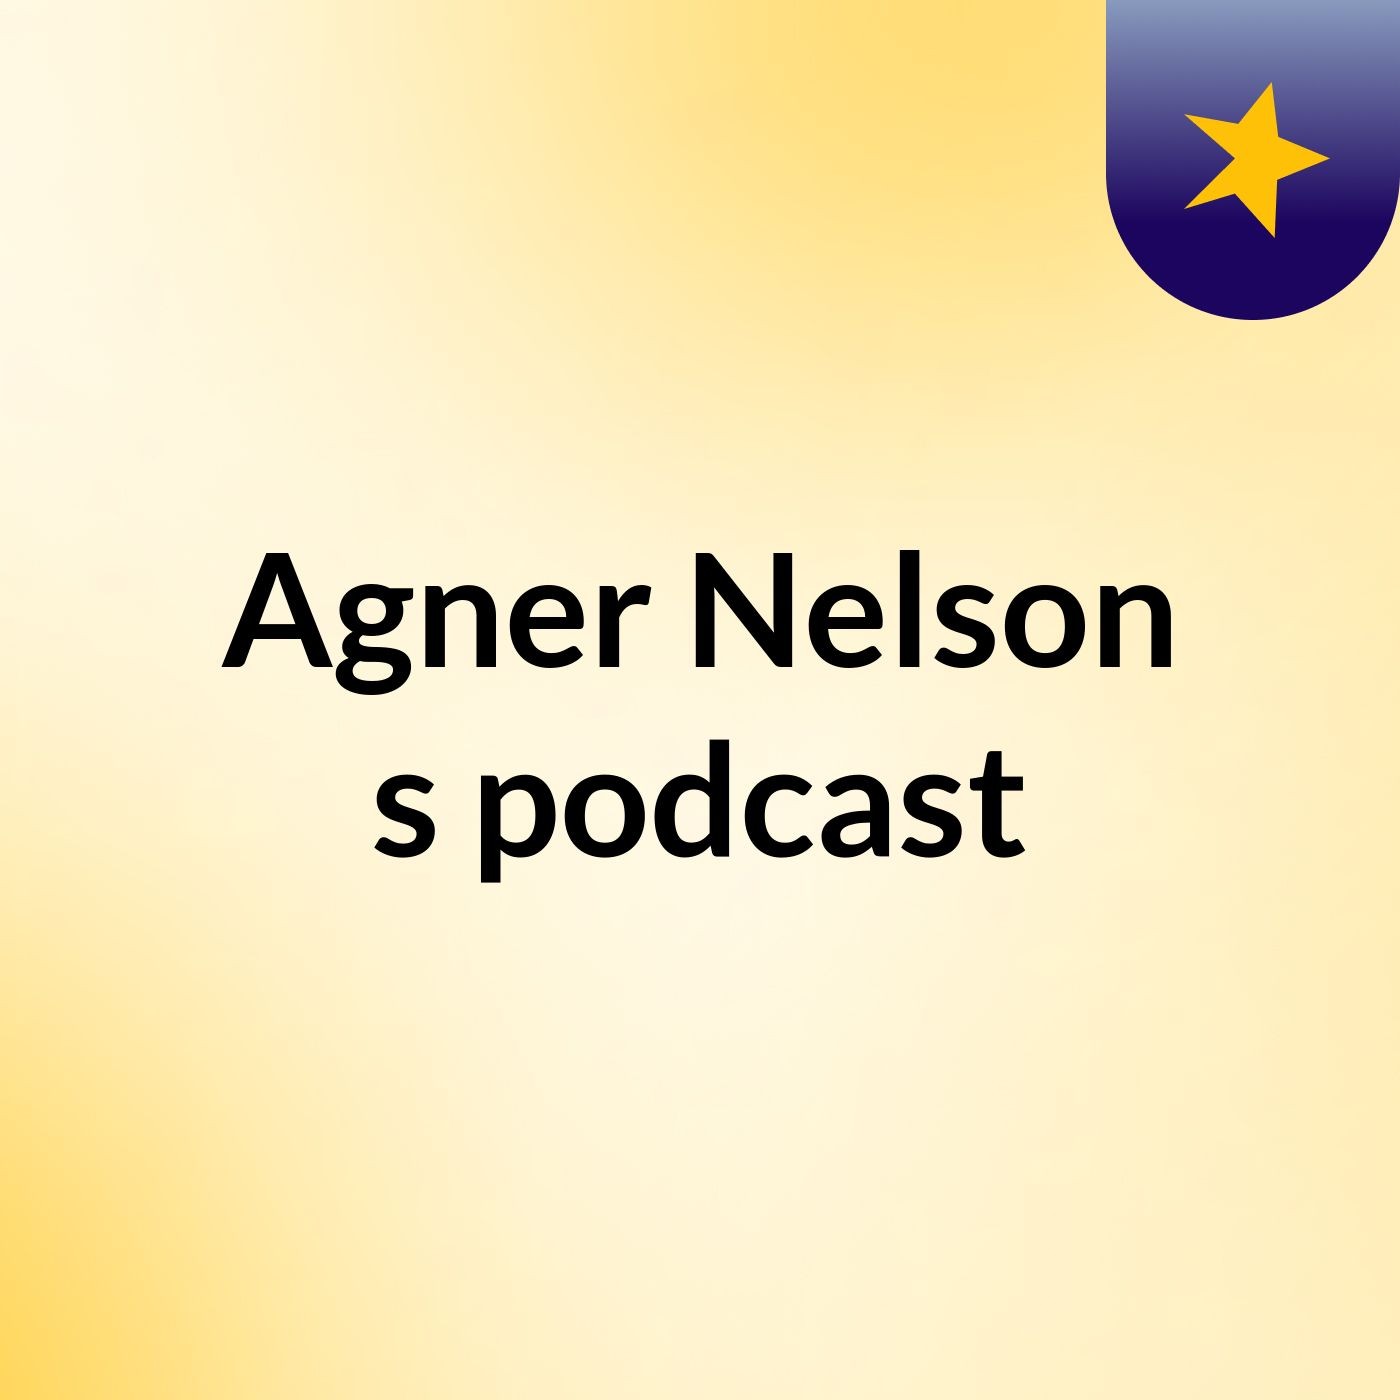 Agner Nelson's podcast